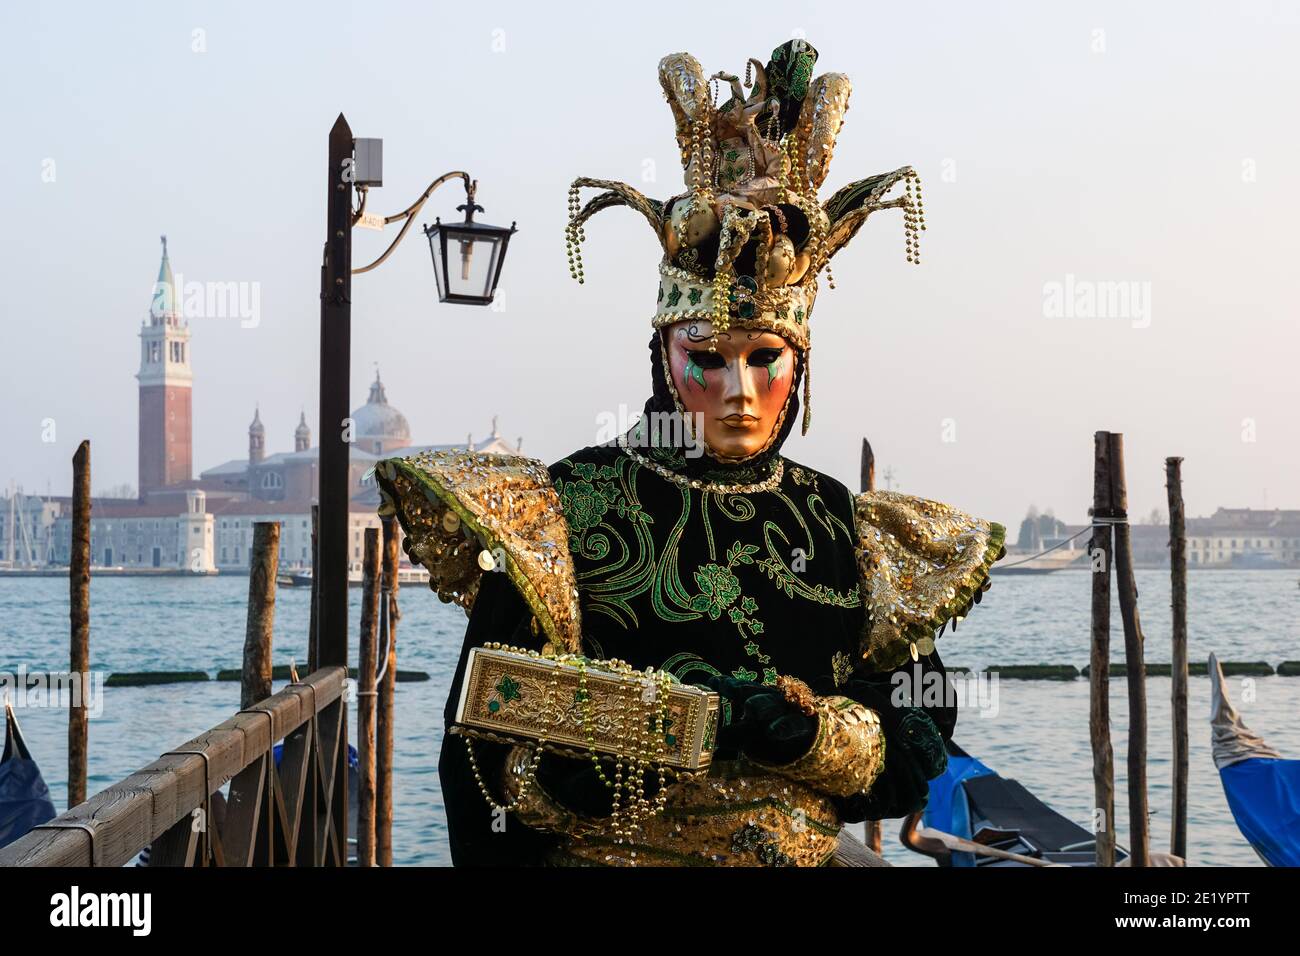 Mann in traditionell dekoriertem Kostüm und bemalte Maske während des Karnevals von Venedig mit dem Kloster San Giorgio dahinter, Venedig, Italien Stockfoto